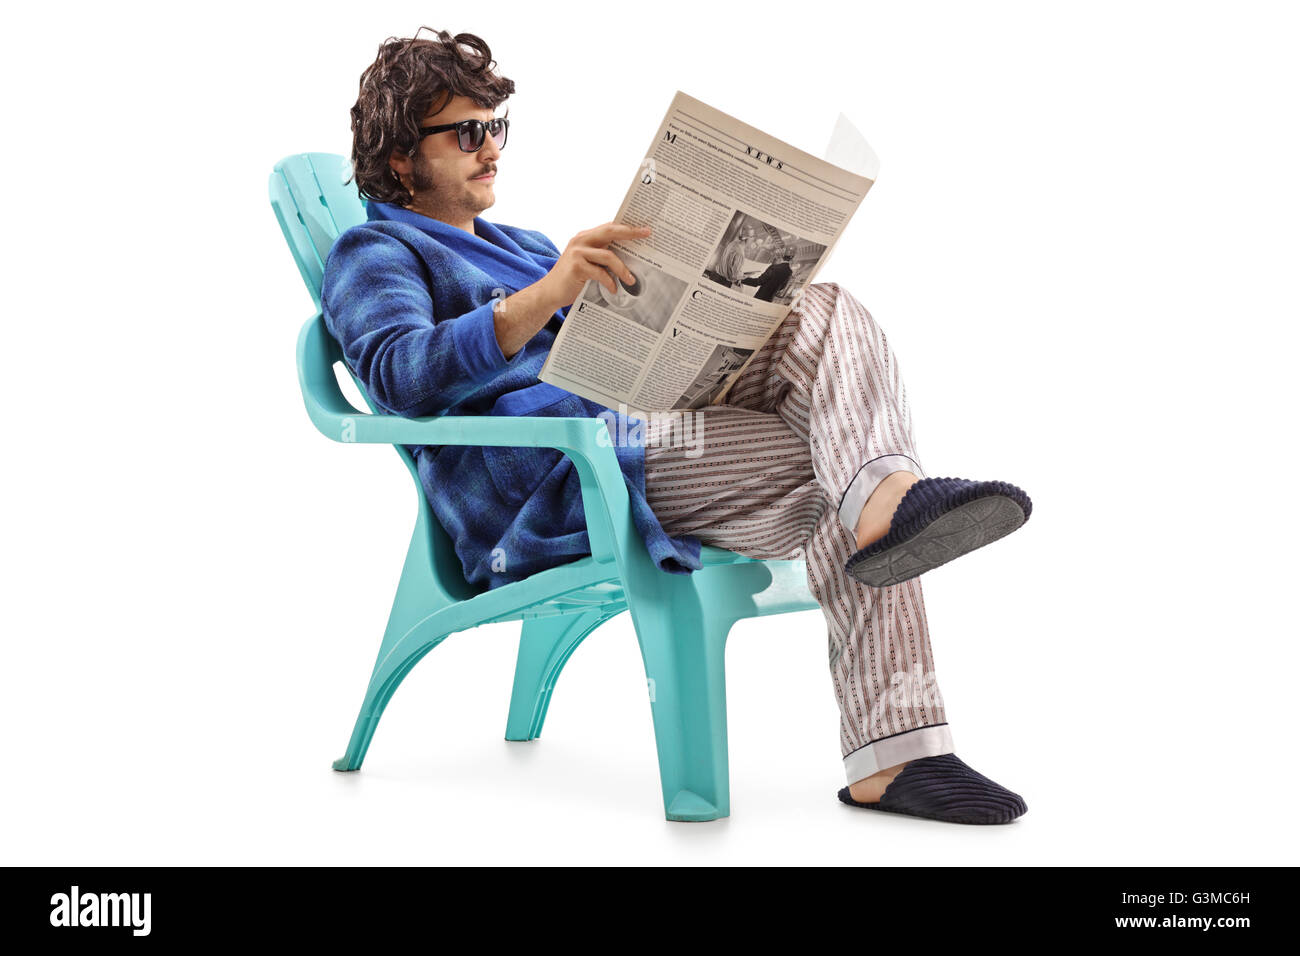 Jeune homme lisant un journal, assis sur une chaise en plastique bleu isolé sur fond blanc Banque D'Images